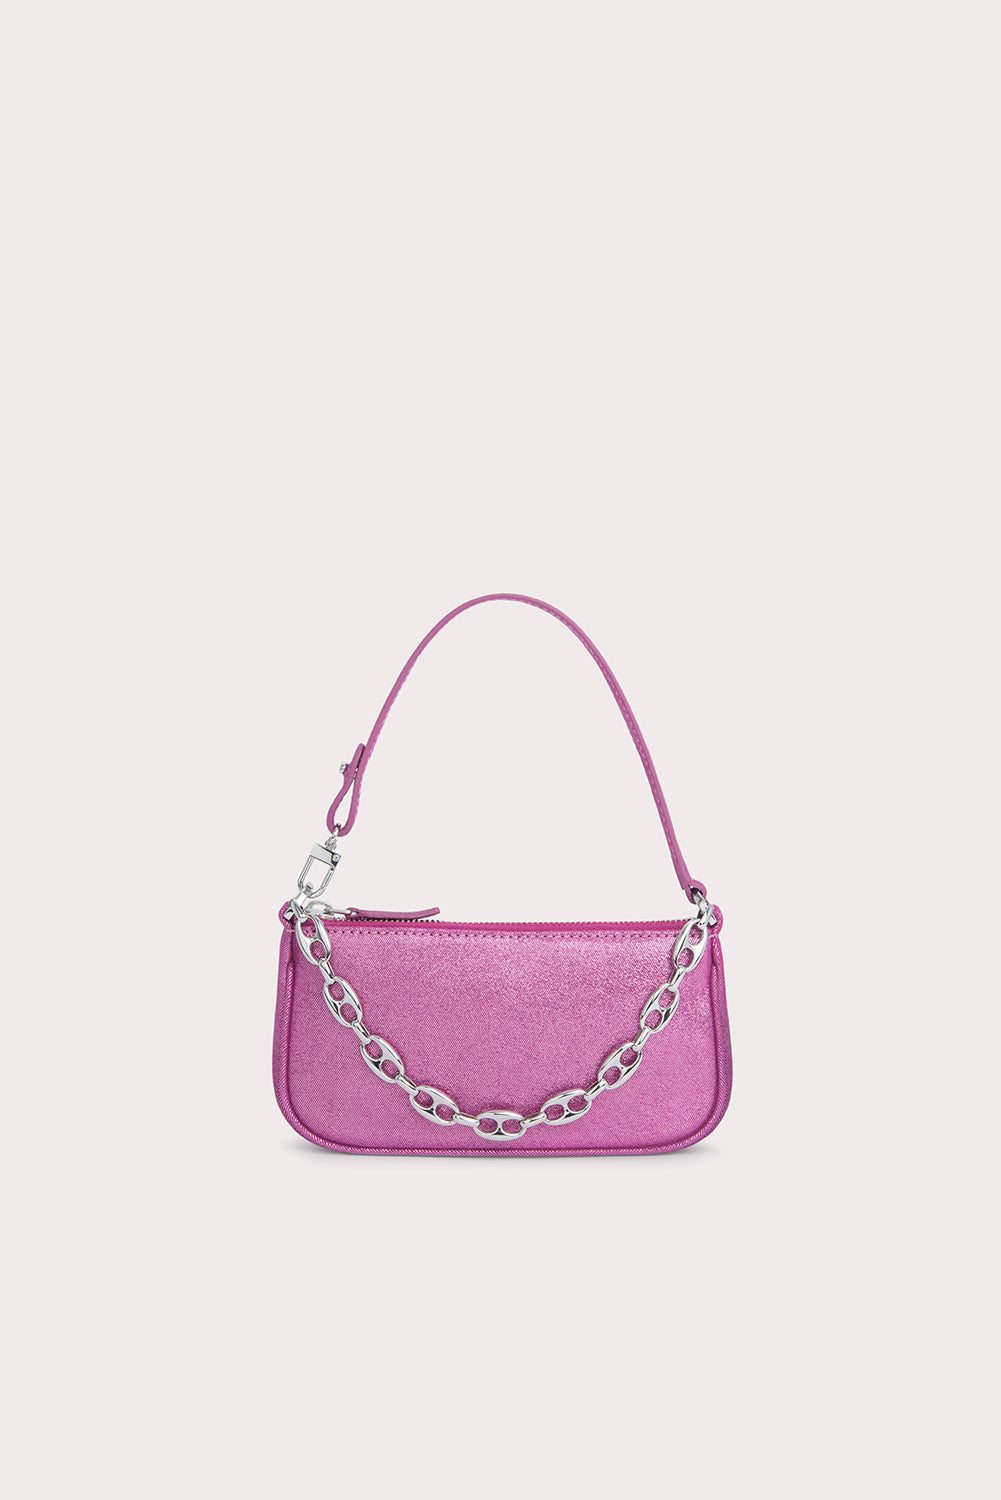 BY FAR - Rachel leather shoulder bag Pink - The Corner